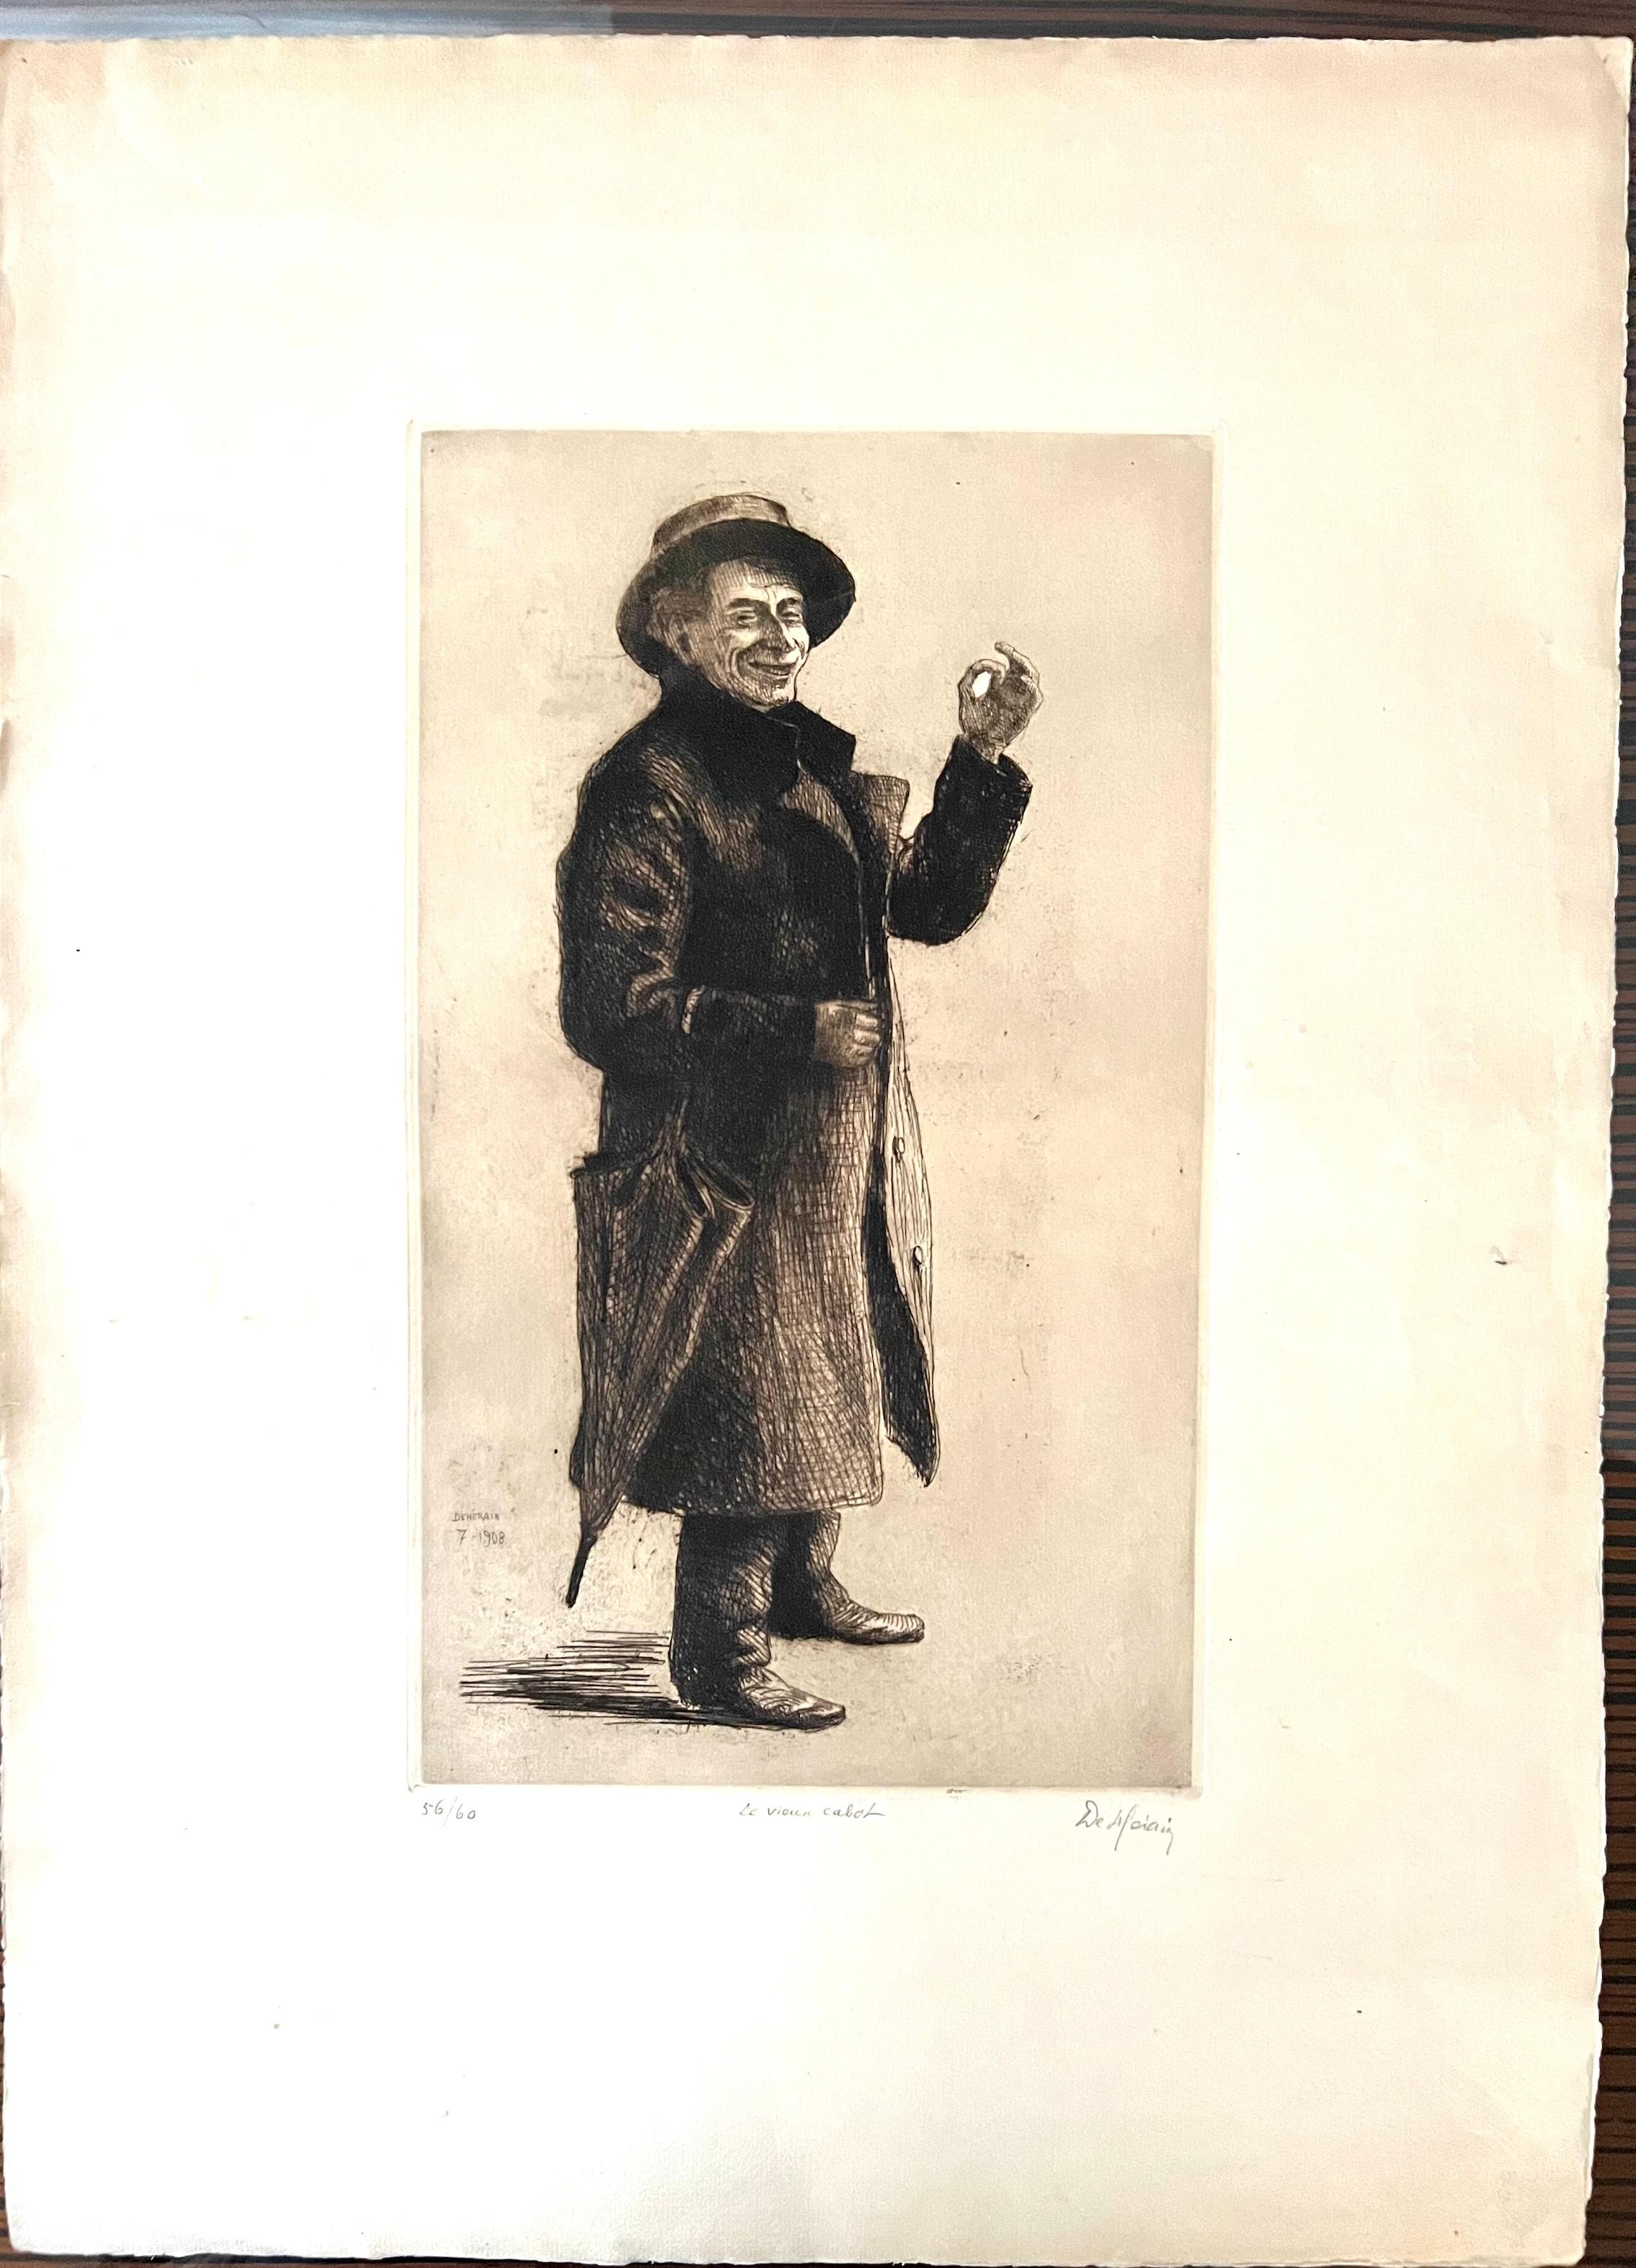 François DE HERAIN (1877-1962) ist ein französischer Maler, Bildhauer und Graveur. 
Die Zeichnung zeigt einen Mann in Mantel und Hut, der einen Regenschirm an der Seite hält. Er macht eine Geste mit zwei Fingern und zeigt dabei ein Grinsen auf